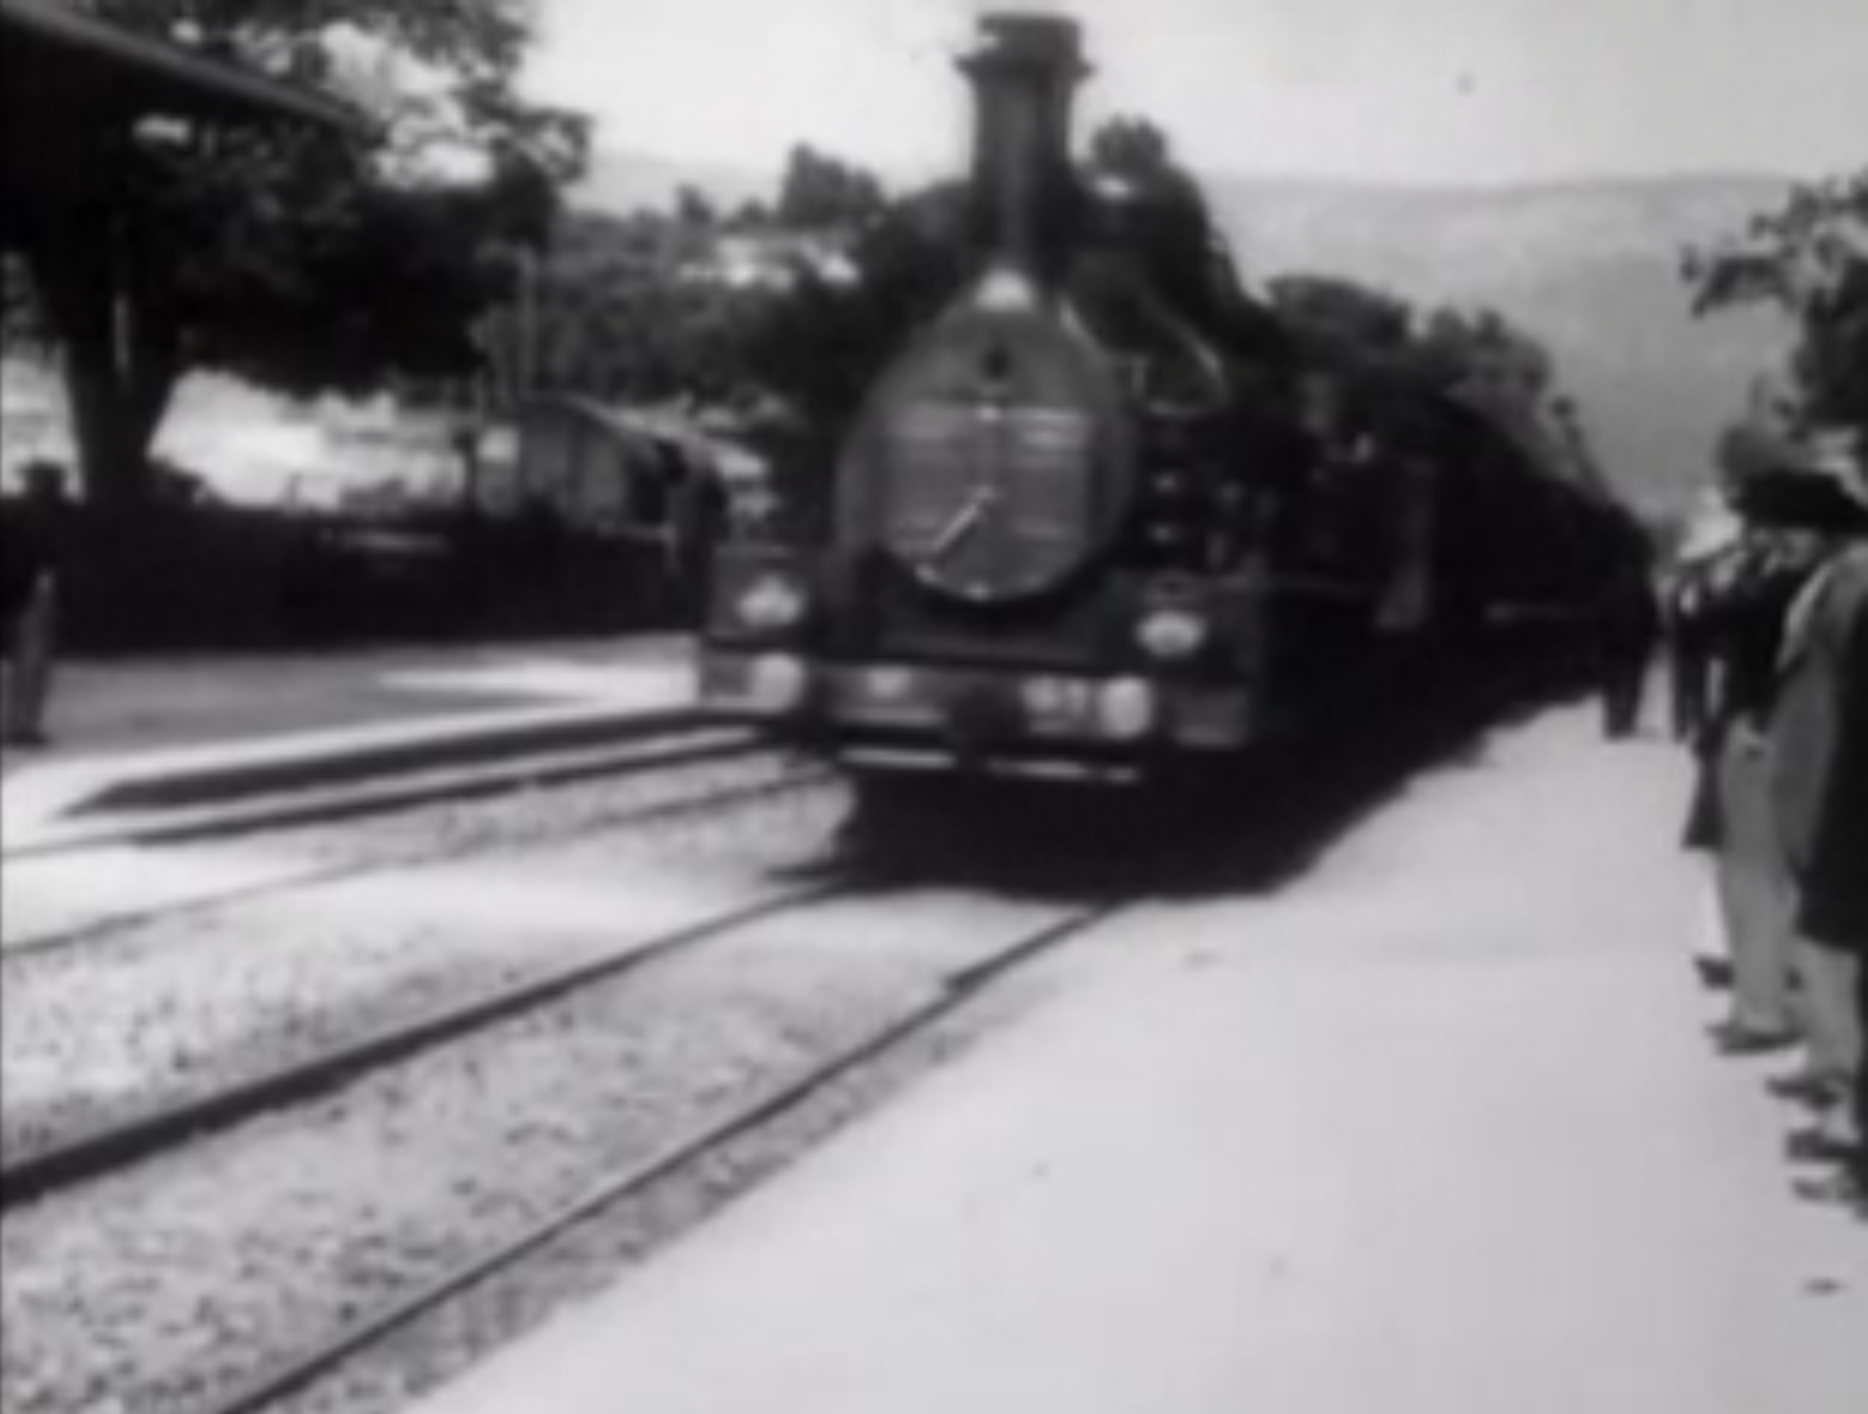 Lumière, 1896, кадр из фильма «Прибытие поезда на вокзал Ла-Сьота». 
Это один из первых фильмов в истории